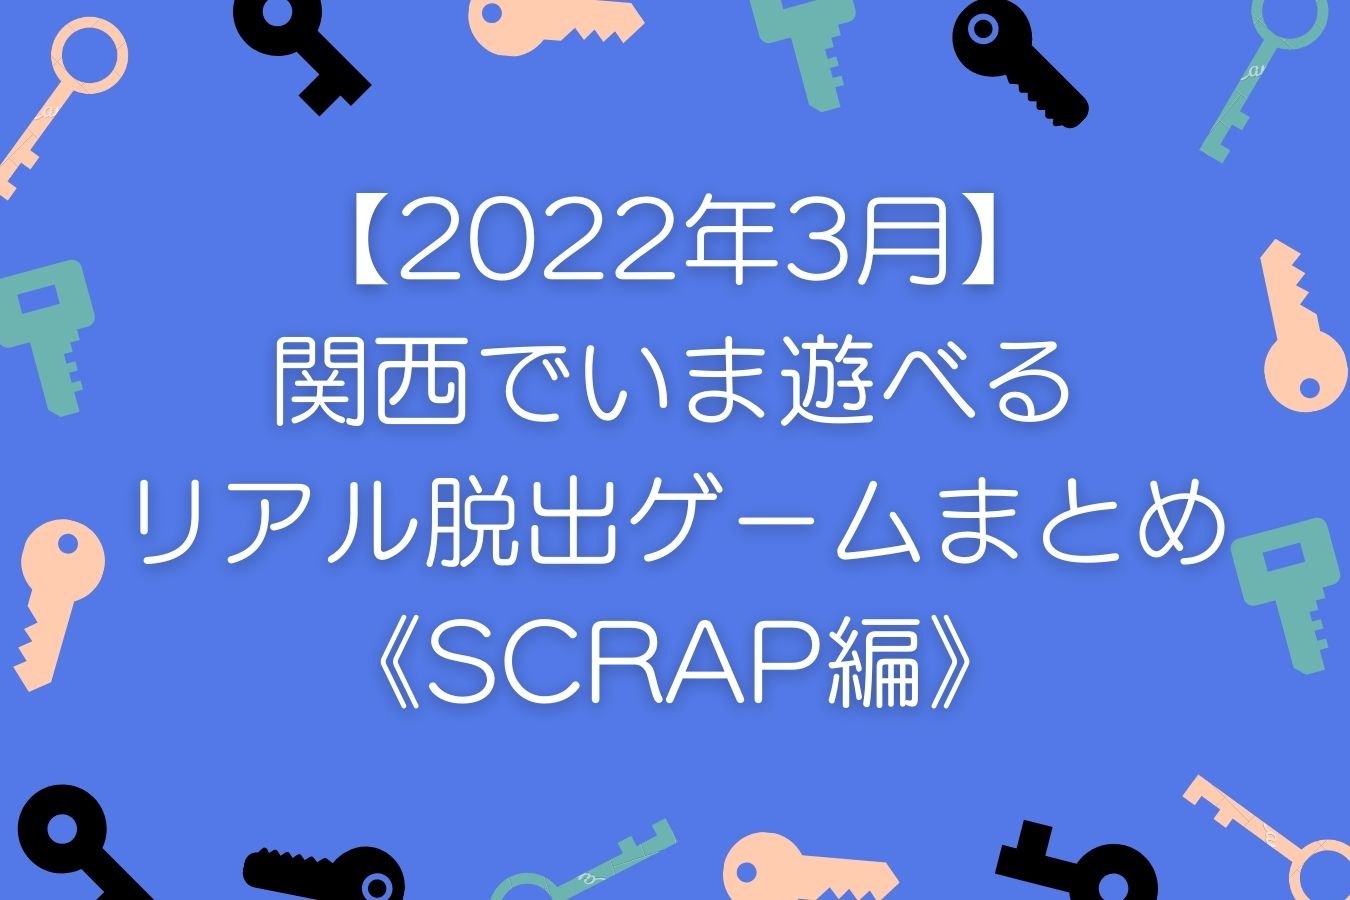 【2022年3月】関西でいま遊べるリアル脱出ゲームまとめ《SCRAP編》